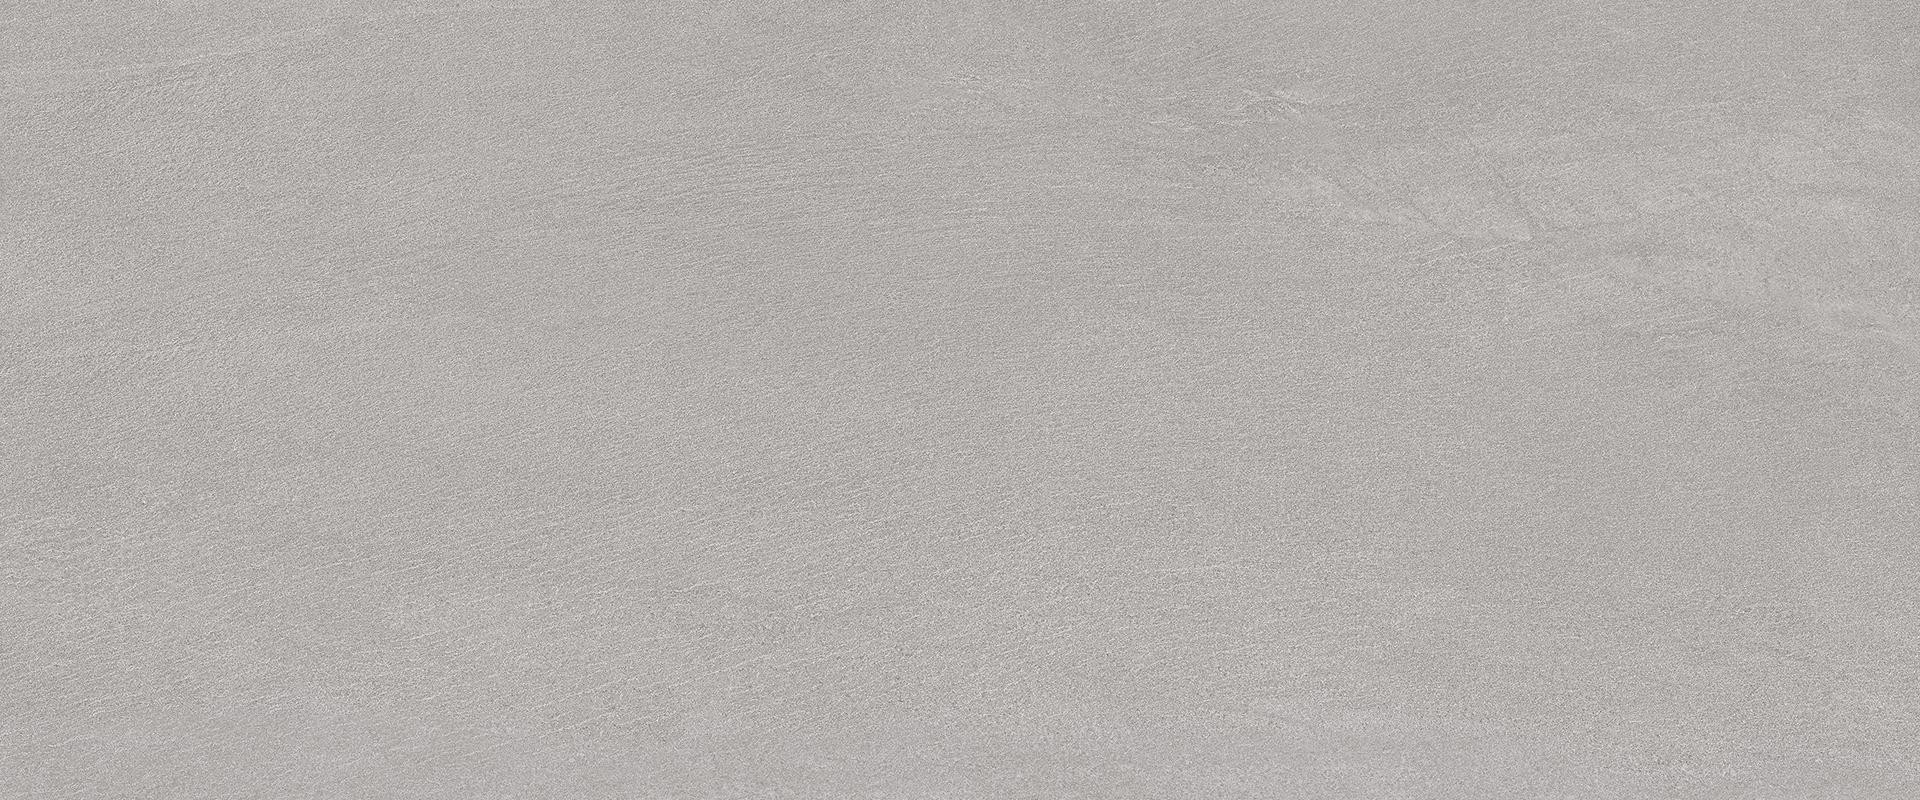 Pavimento e Rivestimento in gres porcellanato serie Stonetalk Minimal Grey Lappato by Ergon